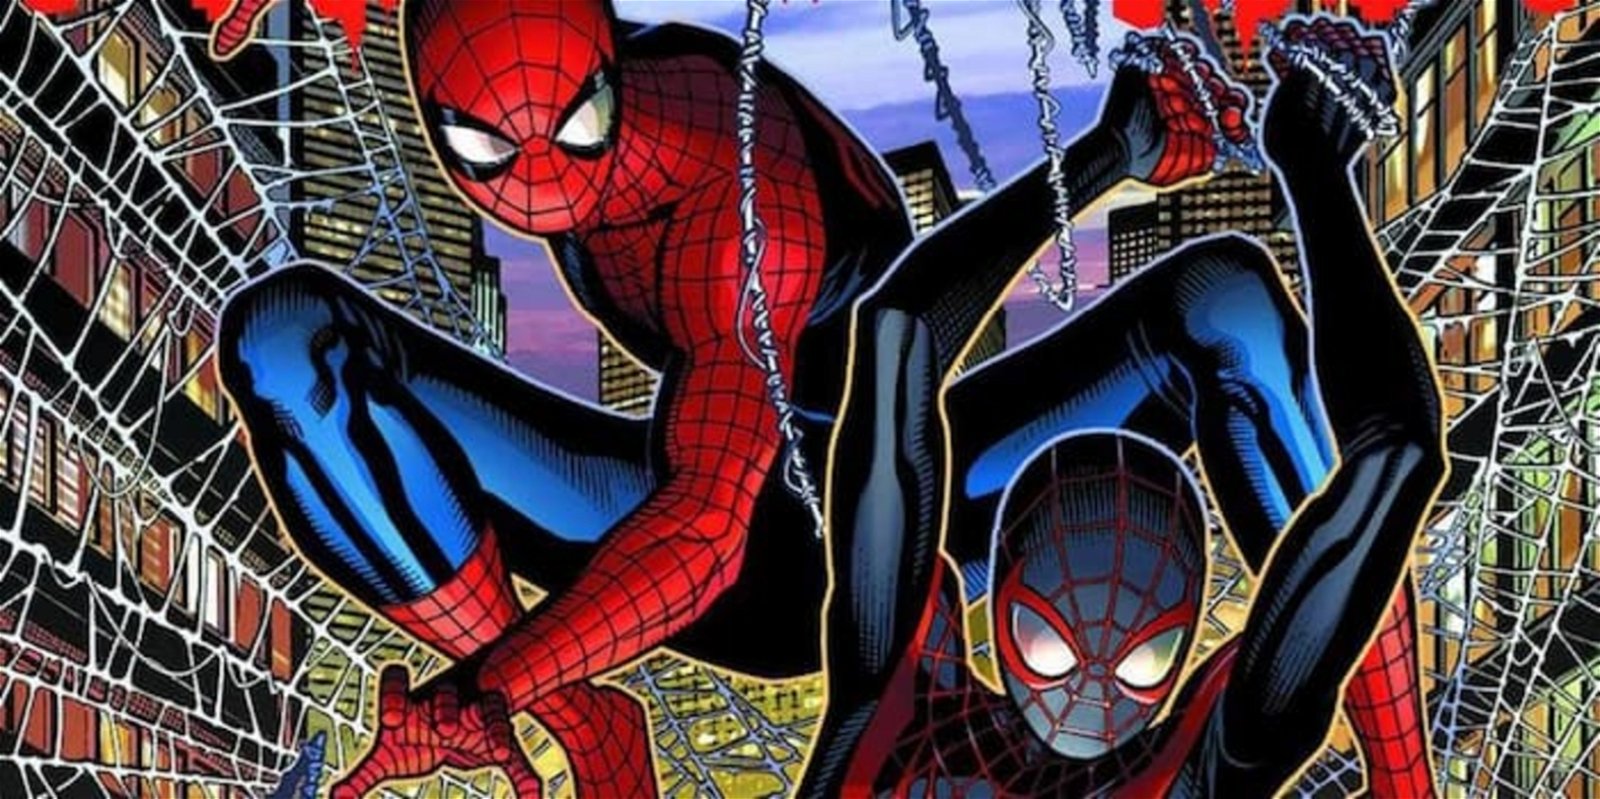 Otro equipo interesante de ver, sería el de Spider-Man junto a su protegido, Miles Morales